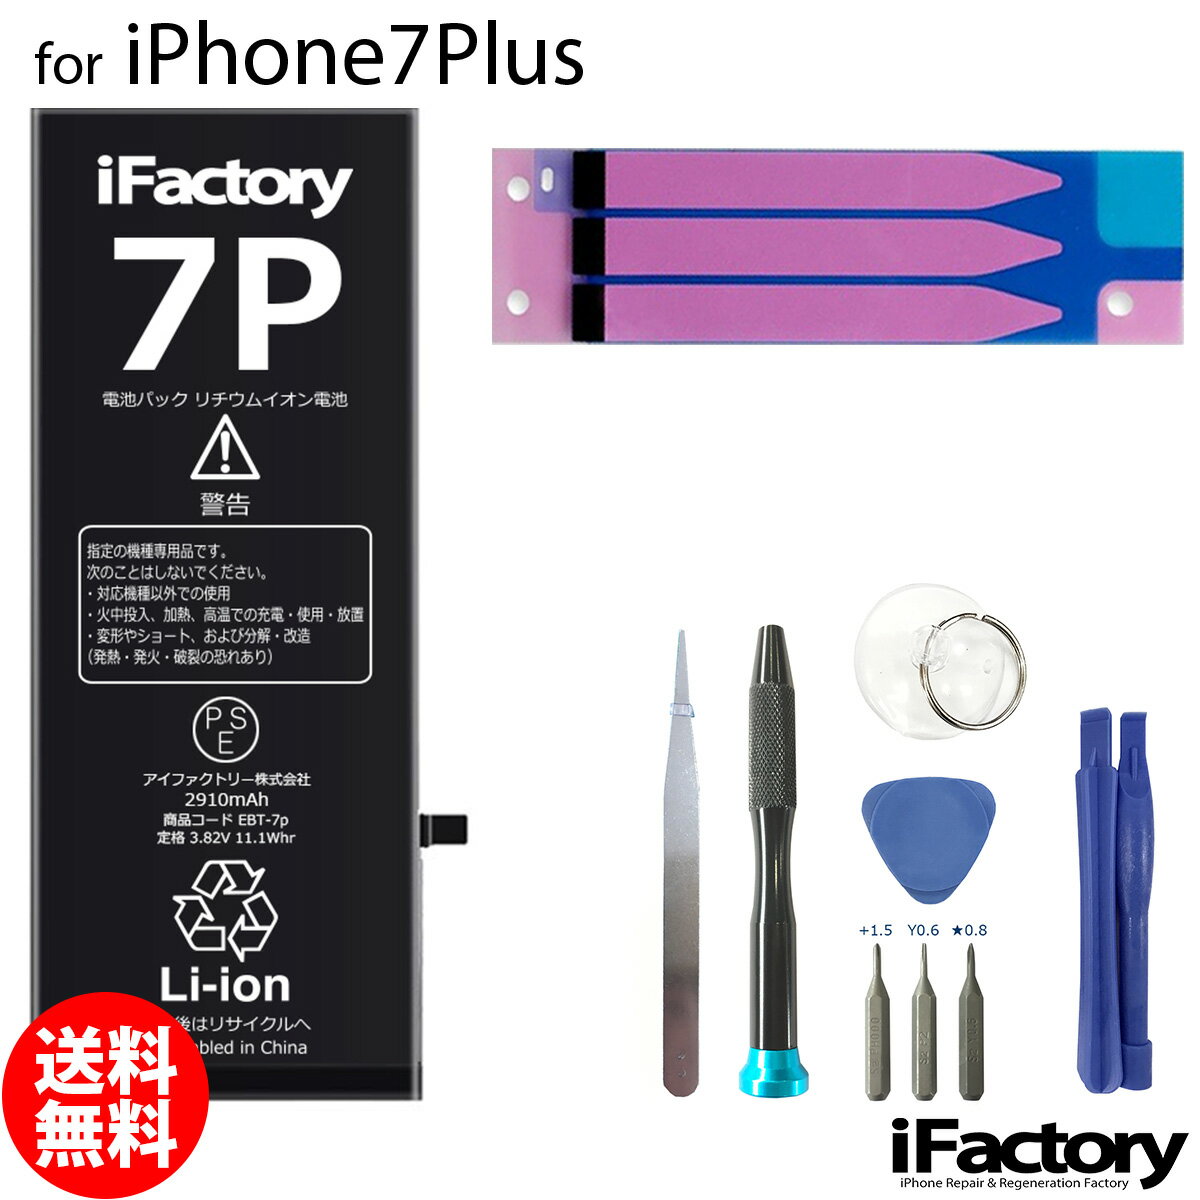  1Nԕۏ iPhone7Plus ݊obe[ i  PSE HZbg lR|X  